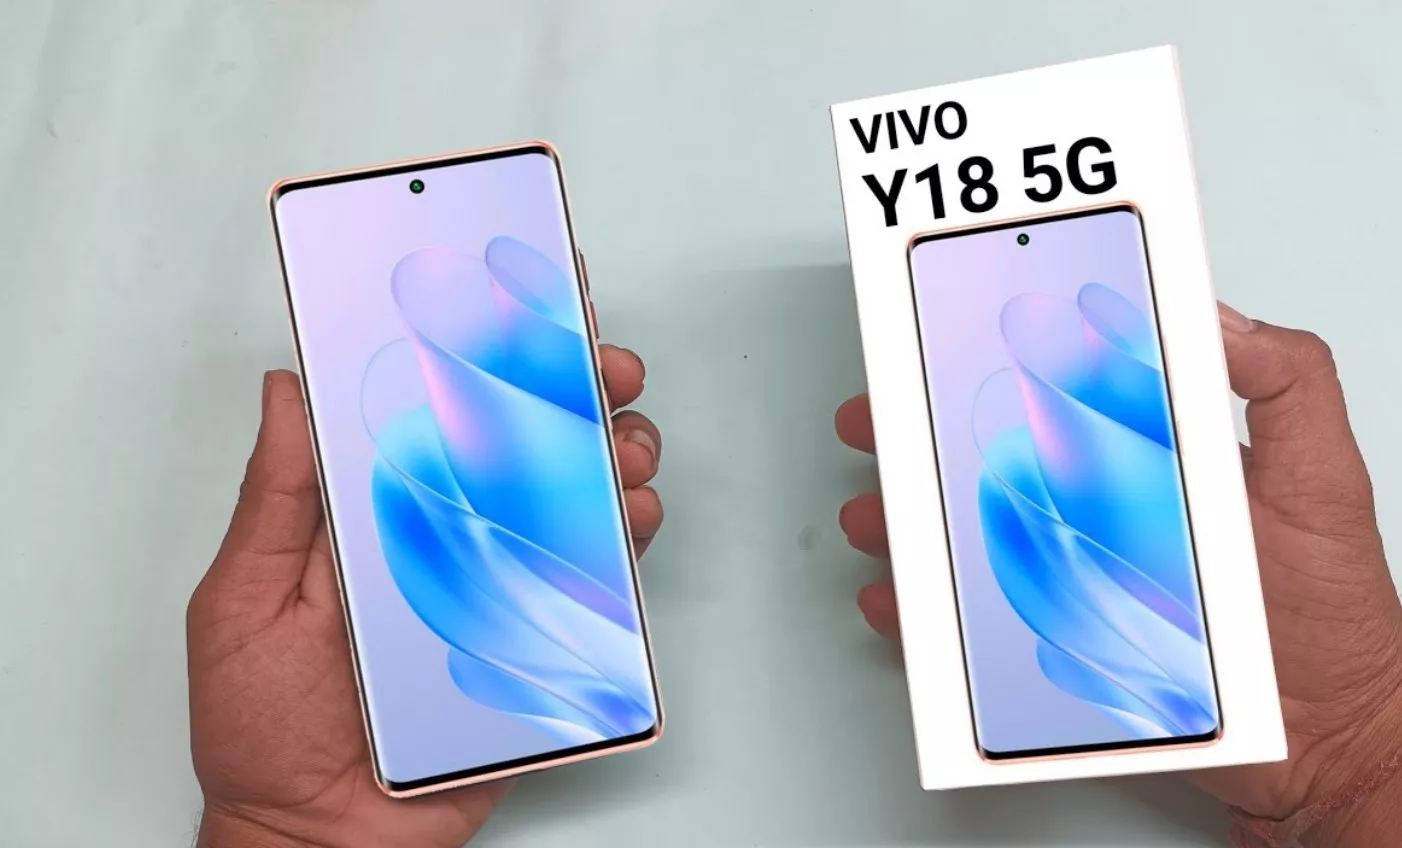 Vivo Y18 Series: 5000mAh की बैटरी और 15W के चार्जर सपोर्ट वीवो ने लॉन्च किये 2 बजट स्मार्टफोन, ये है कीमत और फीचर्स